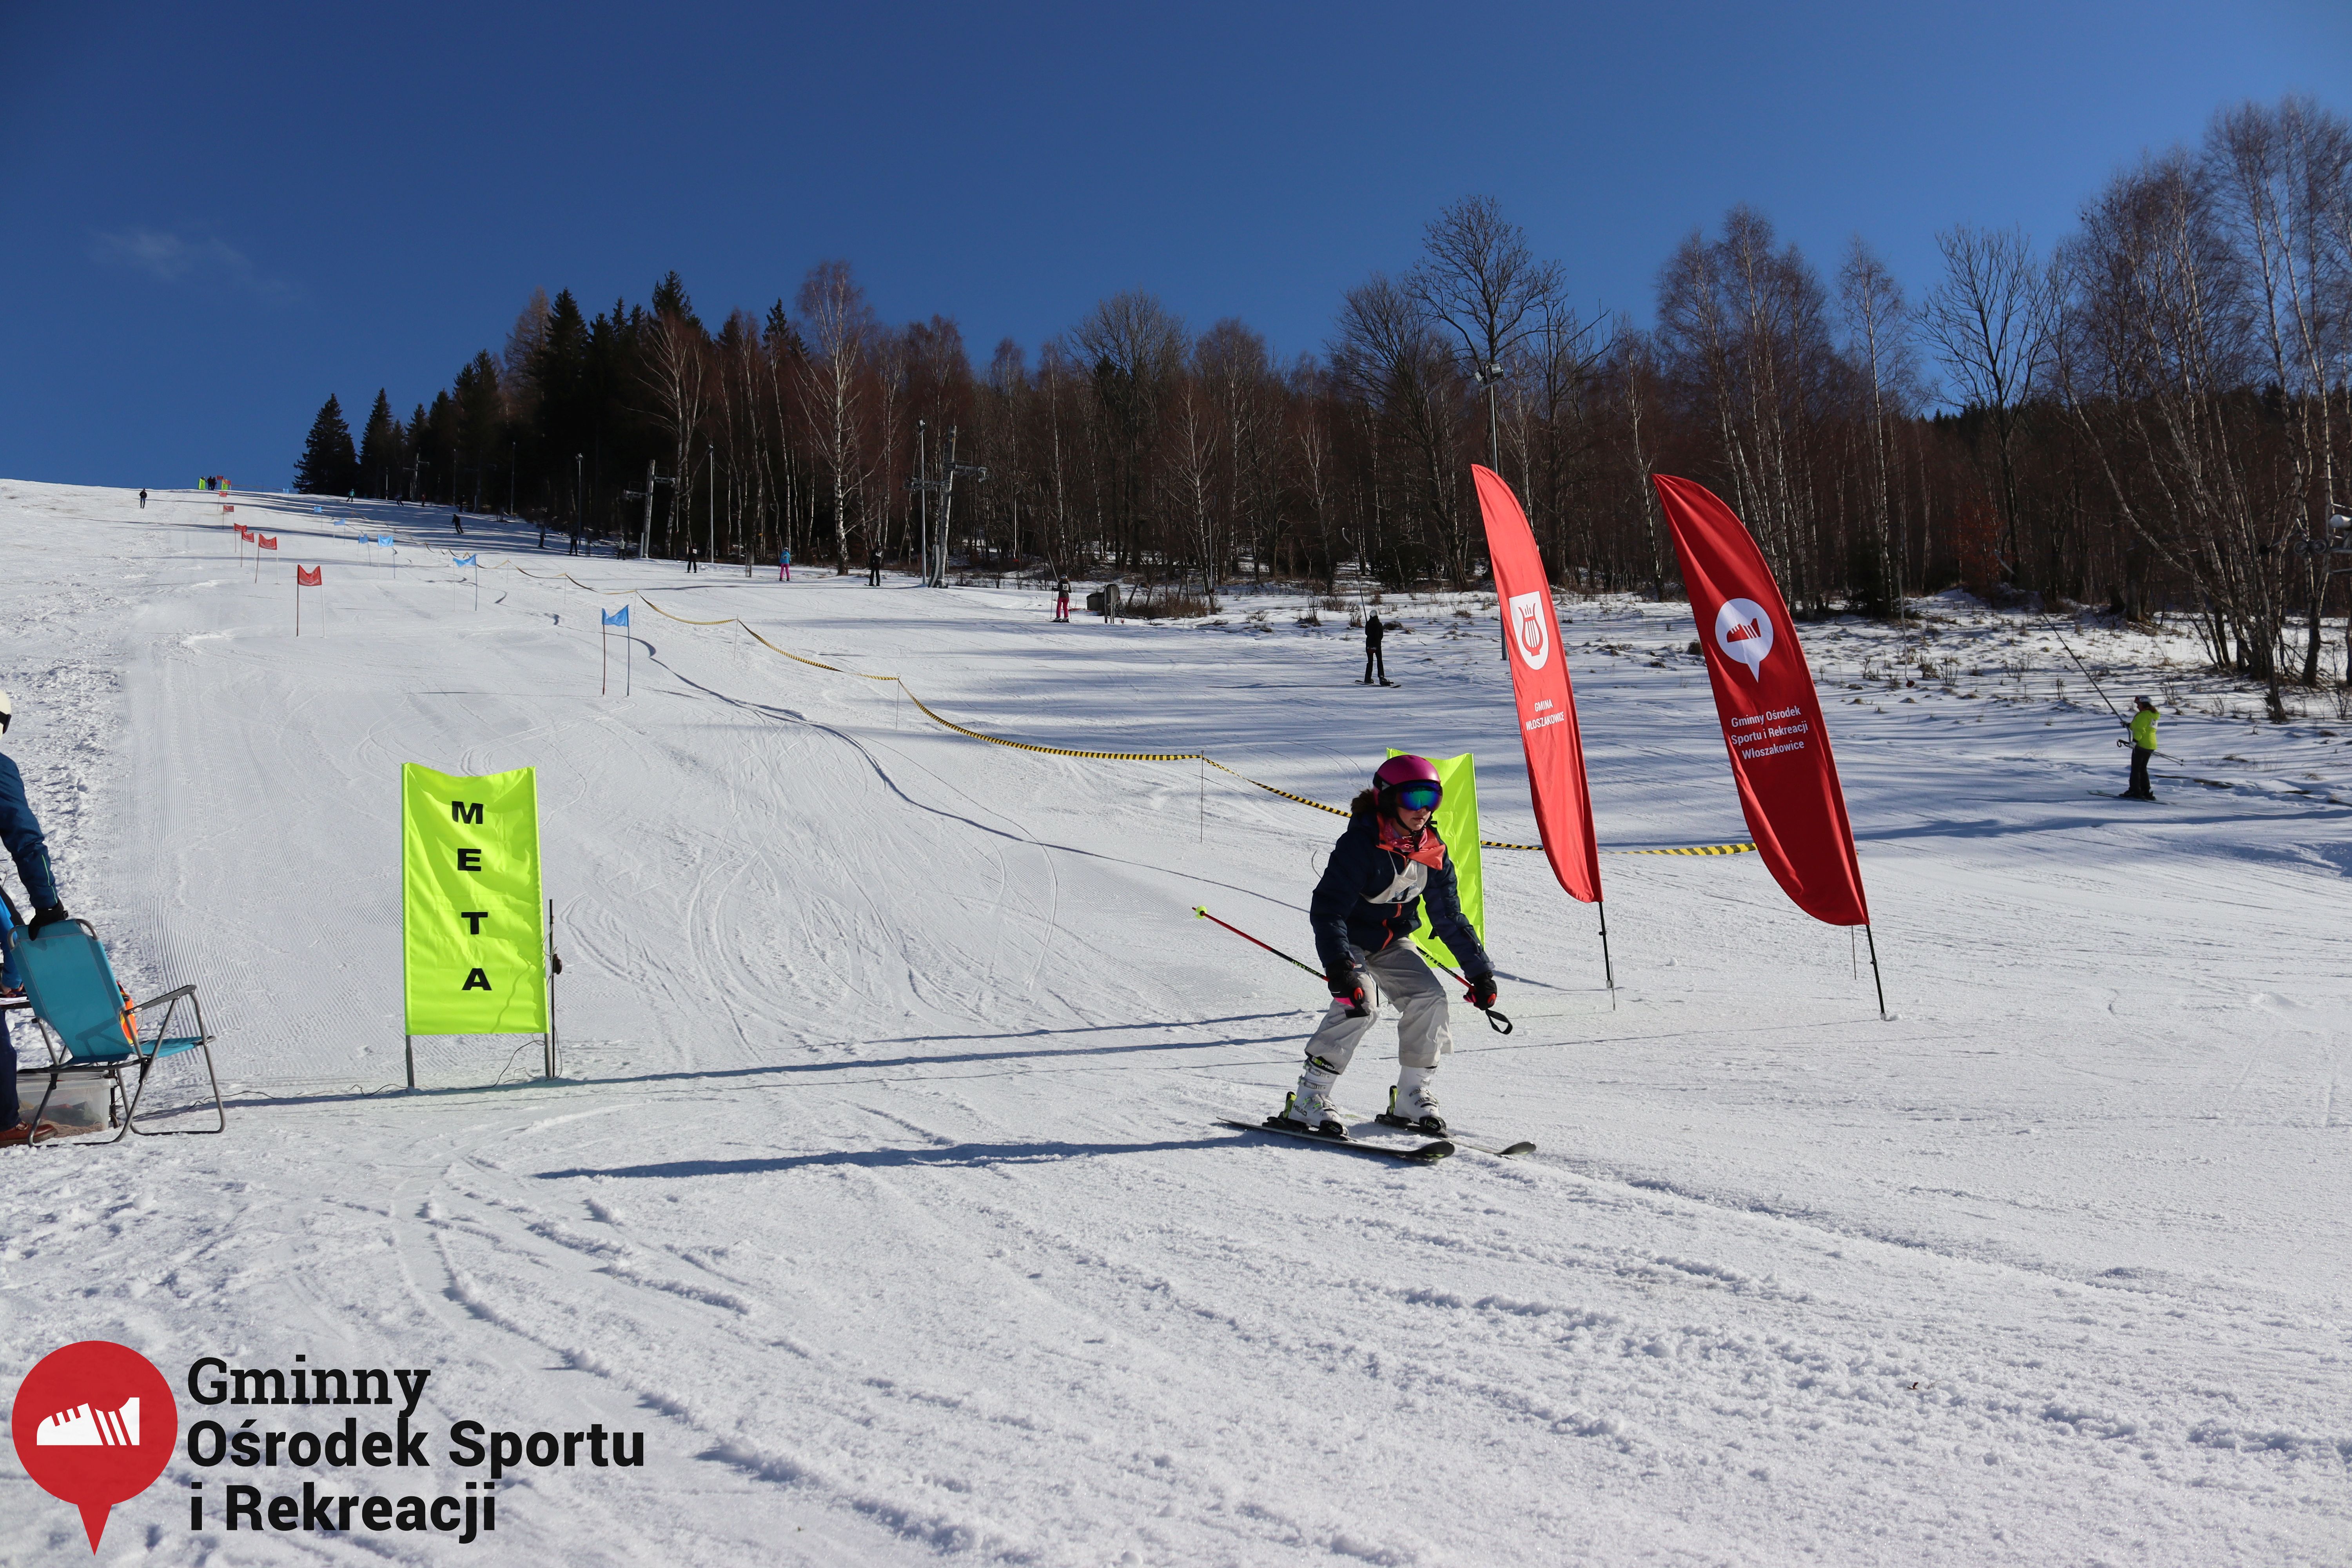 2022.02.12 - 18. Mistrzostwa Gminy Woszakowice w narciarstwie093.jpg - 2,97 MB